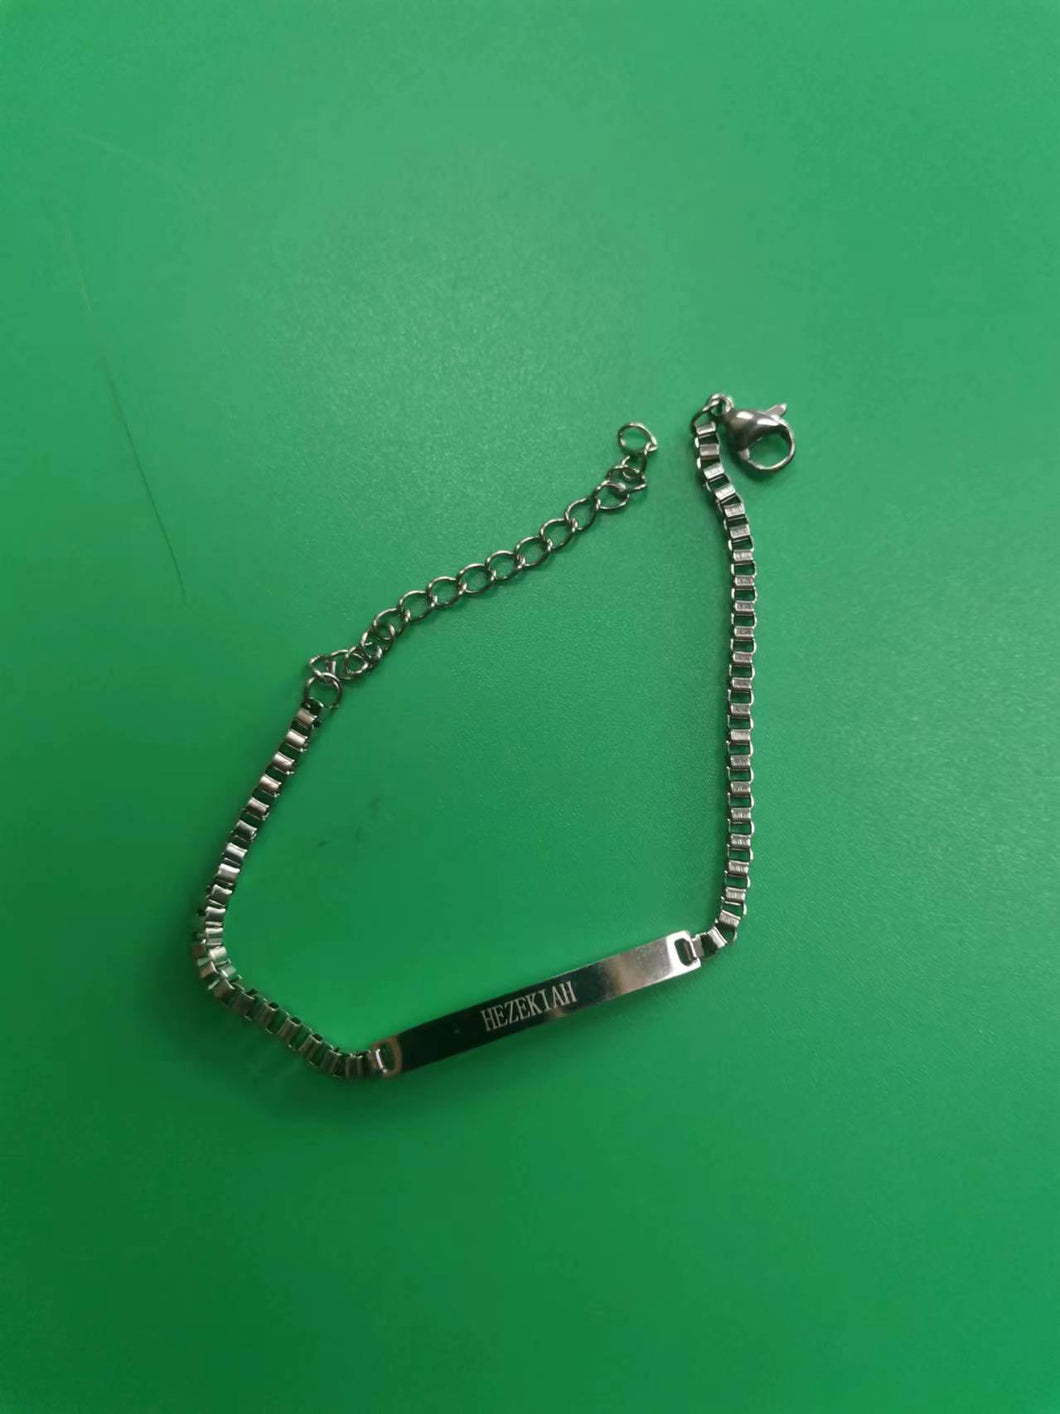 HEZEKIAH Jewelrys, personalized bracelet, 925 sterling silver bracelet